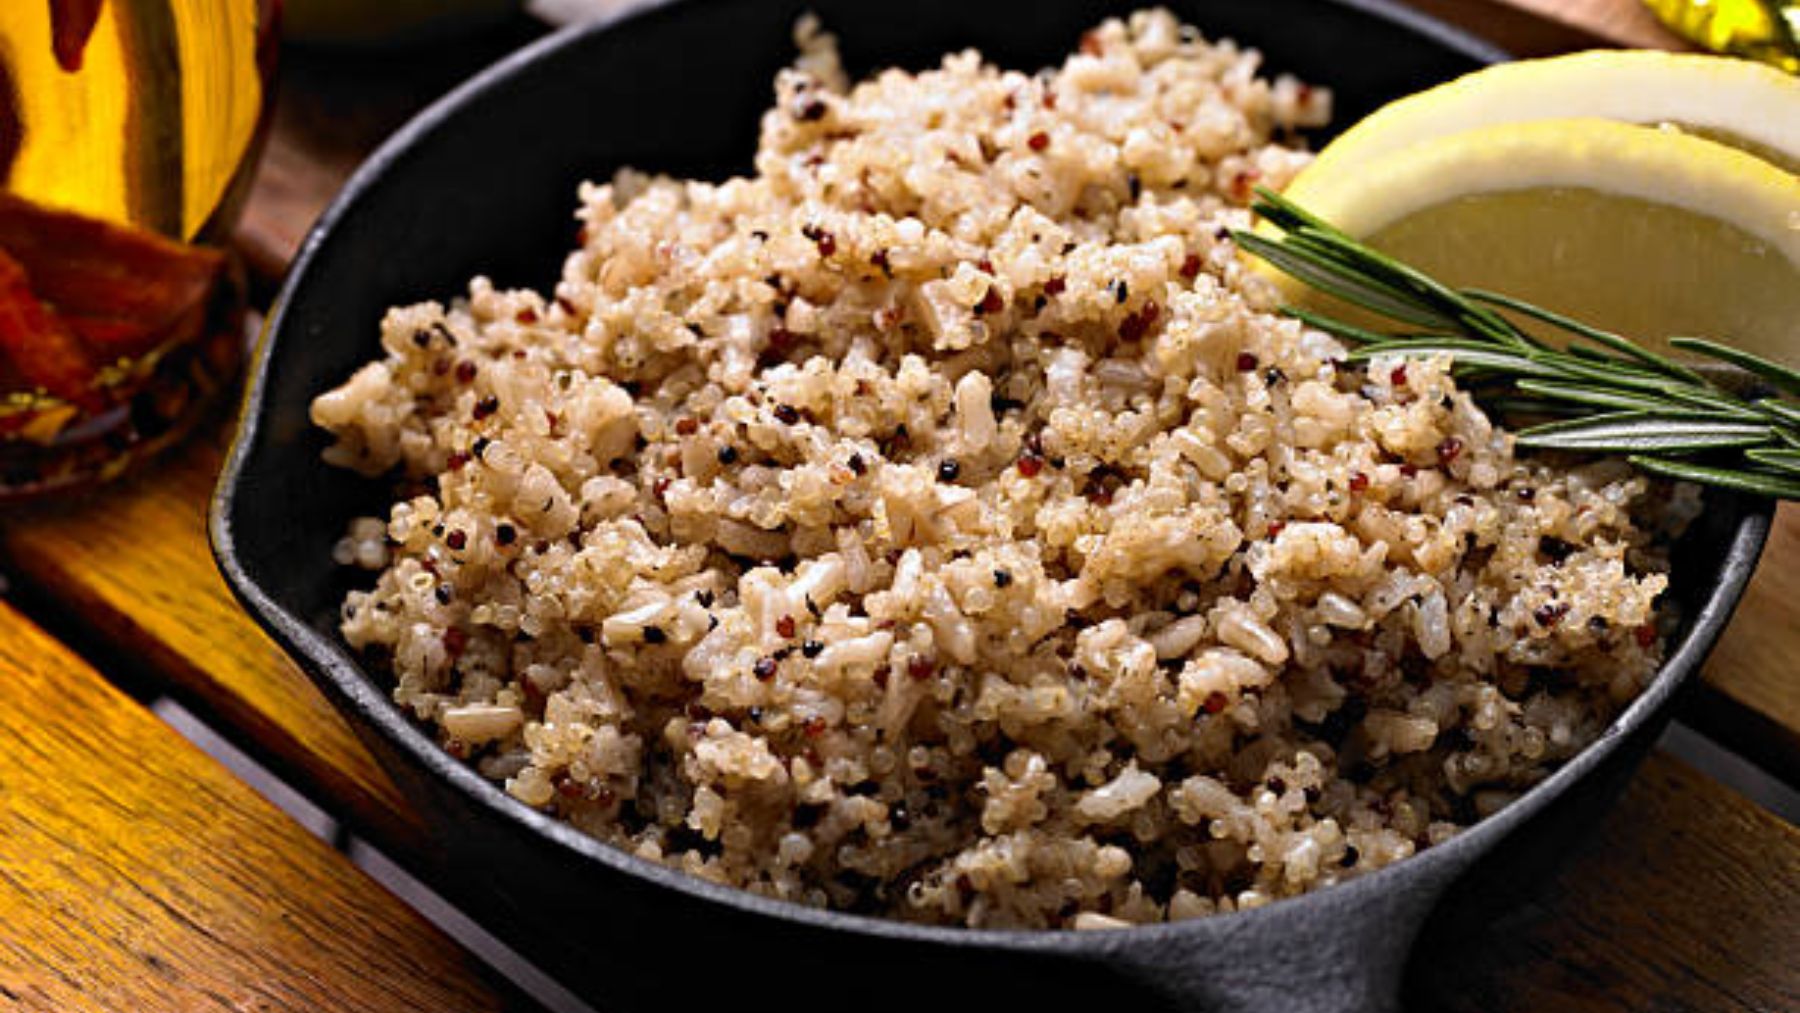 ¿Es mejor tomar arroz integral o quinoa?